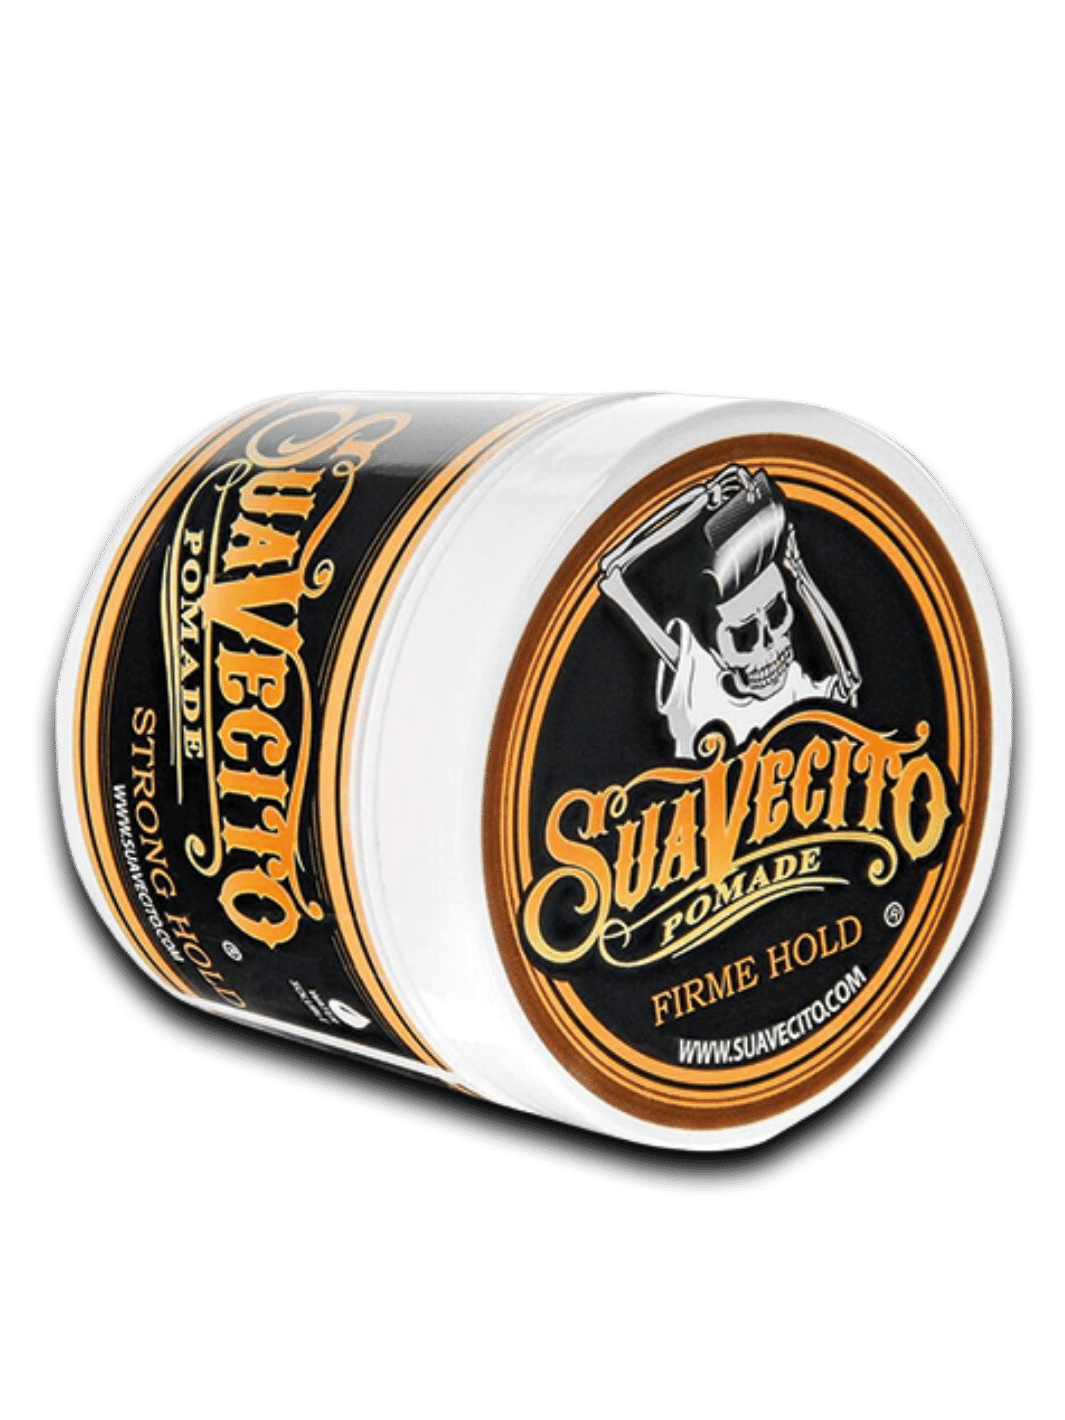 Suavecito Pomade Firme, 113g Dose, bietet extra starken Halt und hohen Glanz für anspruchsvolle Haarstile, in einer markanten schwarzen Dose mit rot-weißem Suavecito-Logo, verfügbar bei Phullcutz.